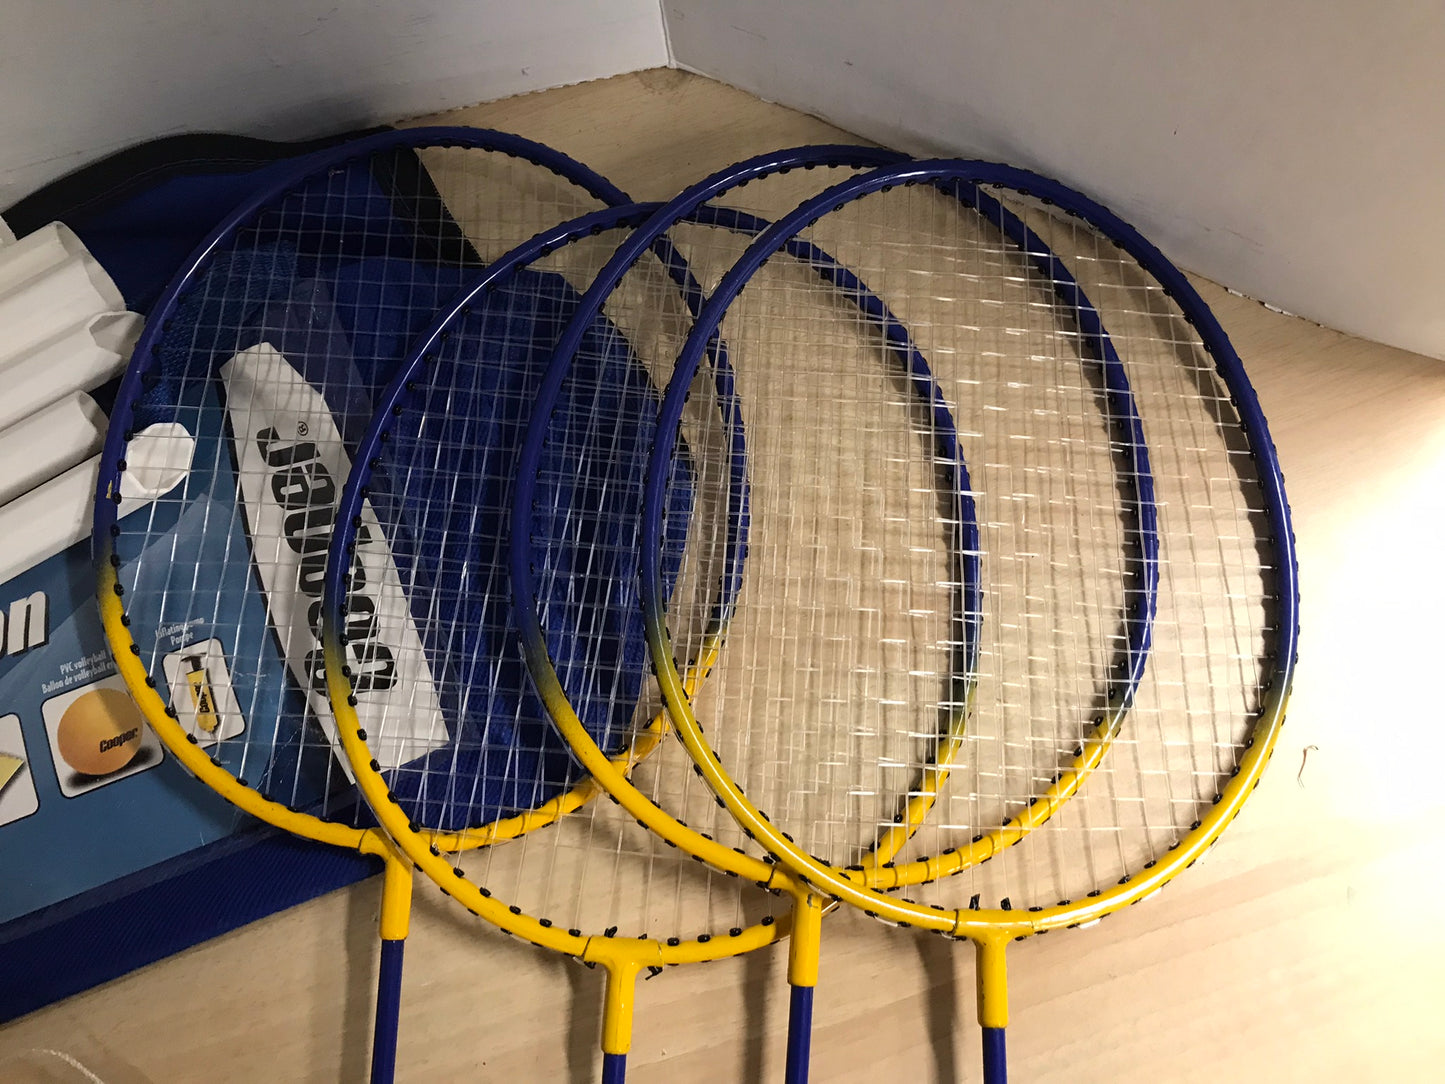 Badminton Raquets Set 4 With Case Minor Wear